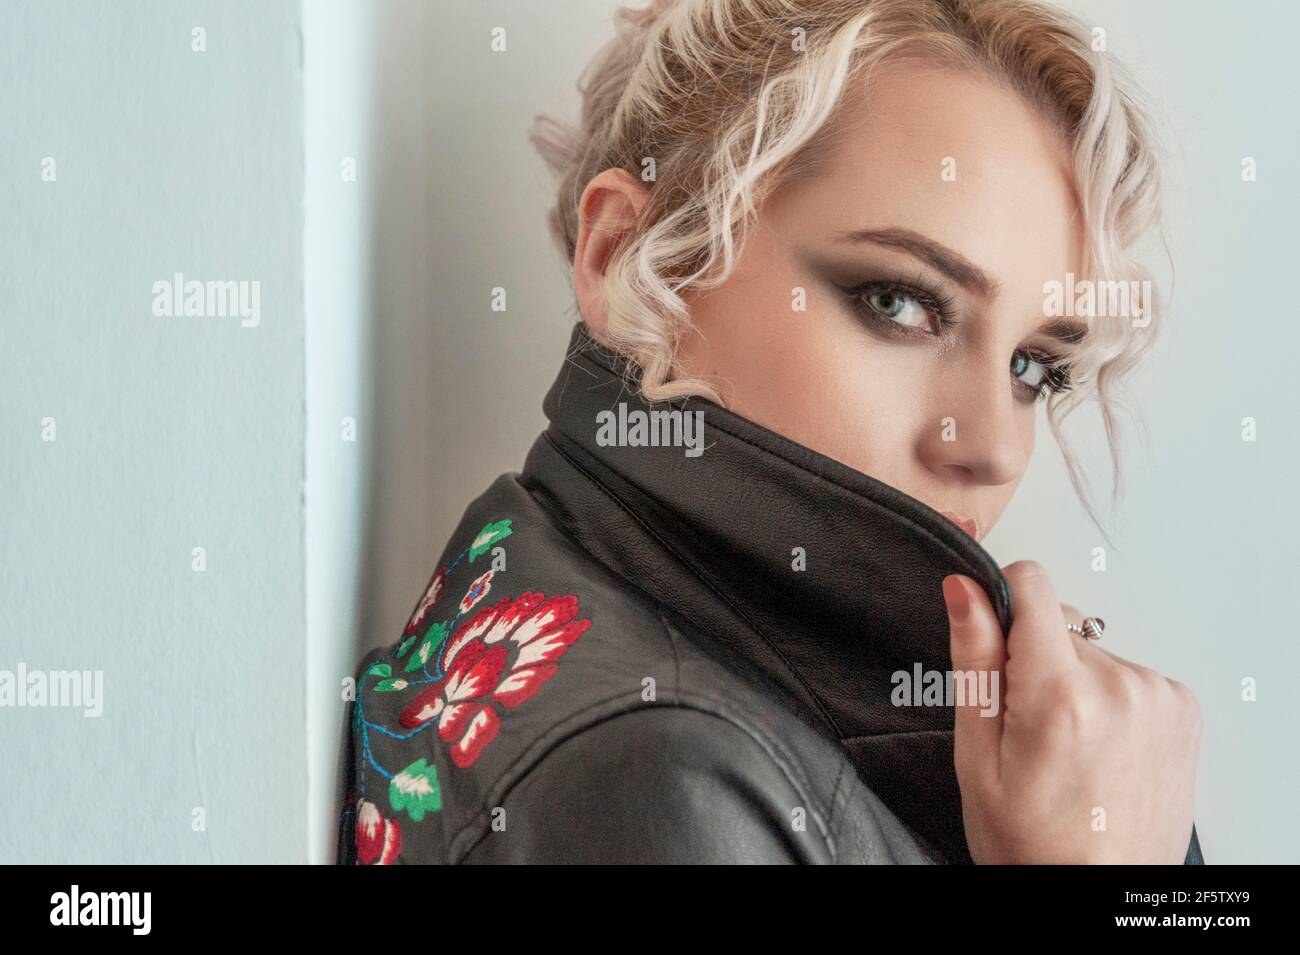 Scatto stretto di giovane donna con ombra scura dell'occhio che guarda sopra il collare della sua giacca di cuoio, appoggiandosi contro una parete interna. Foto Stock